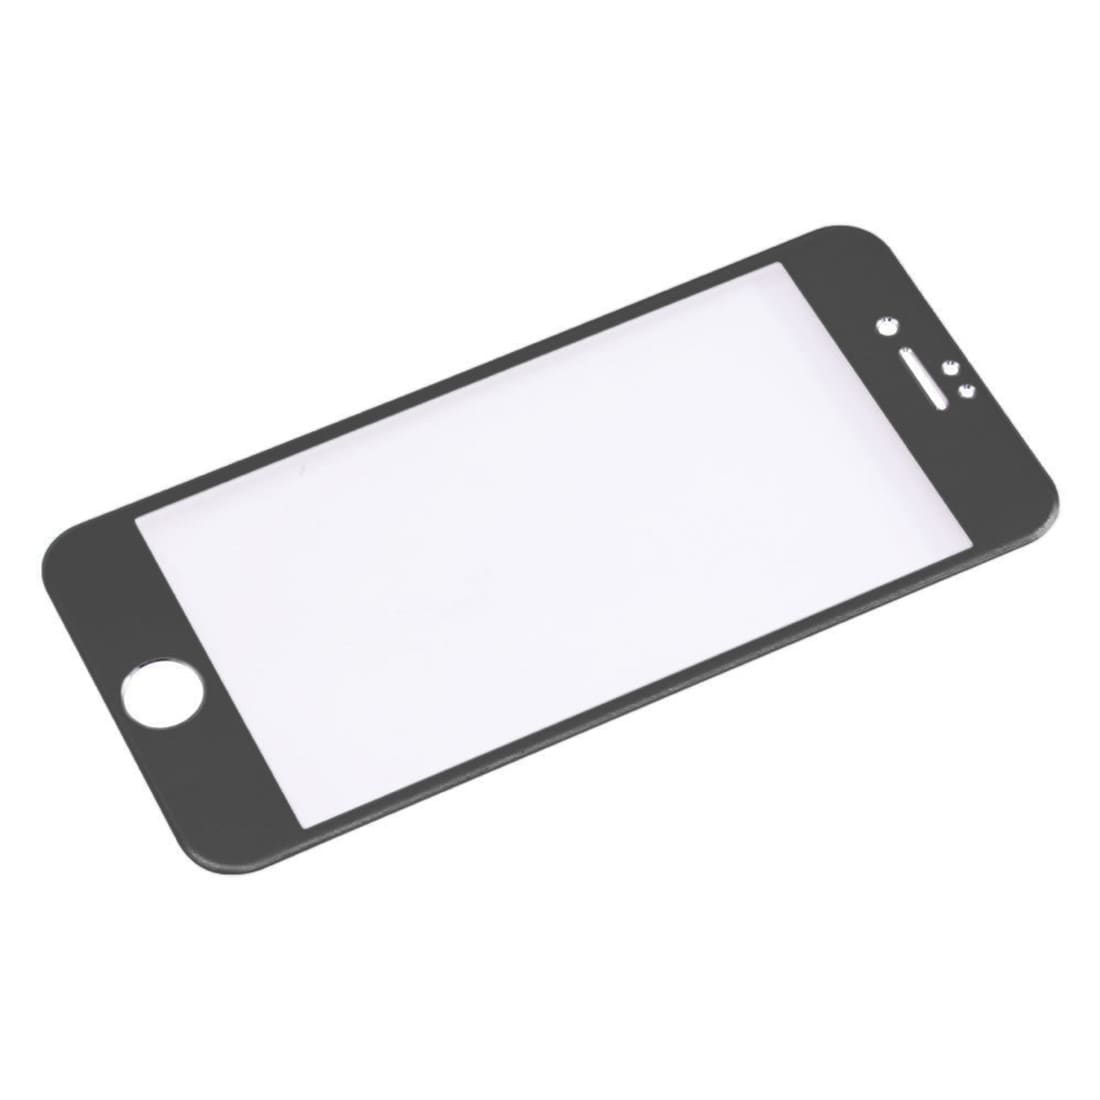 Bøyd herdet fullskjermbeskyttelse av glass til iPhone 8 / 7 - Svart